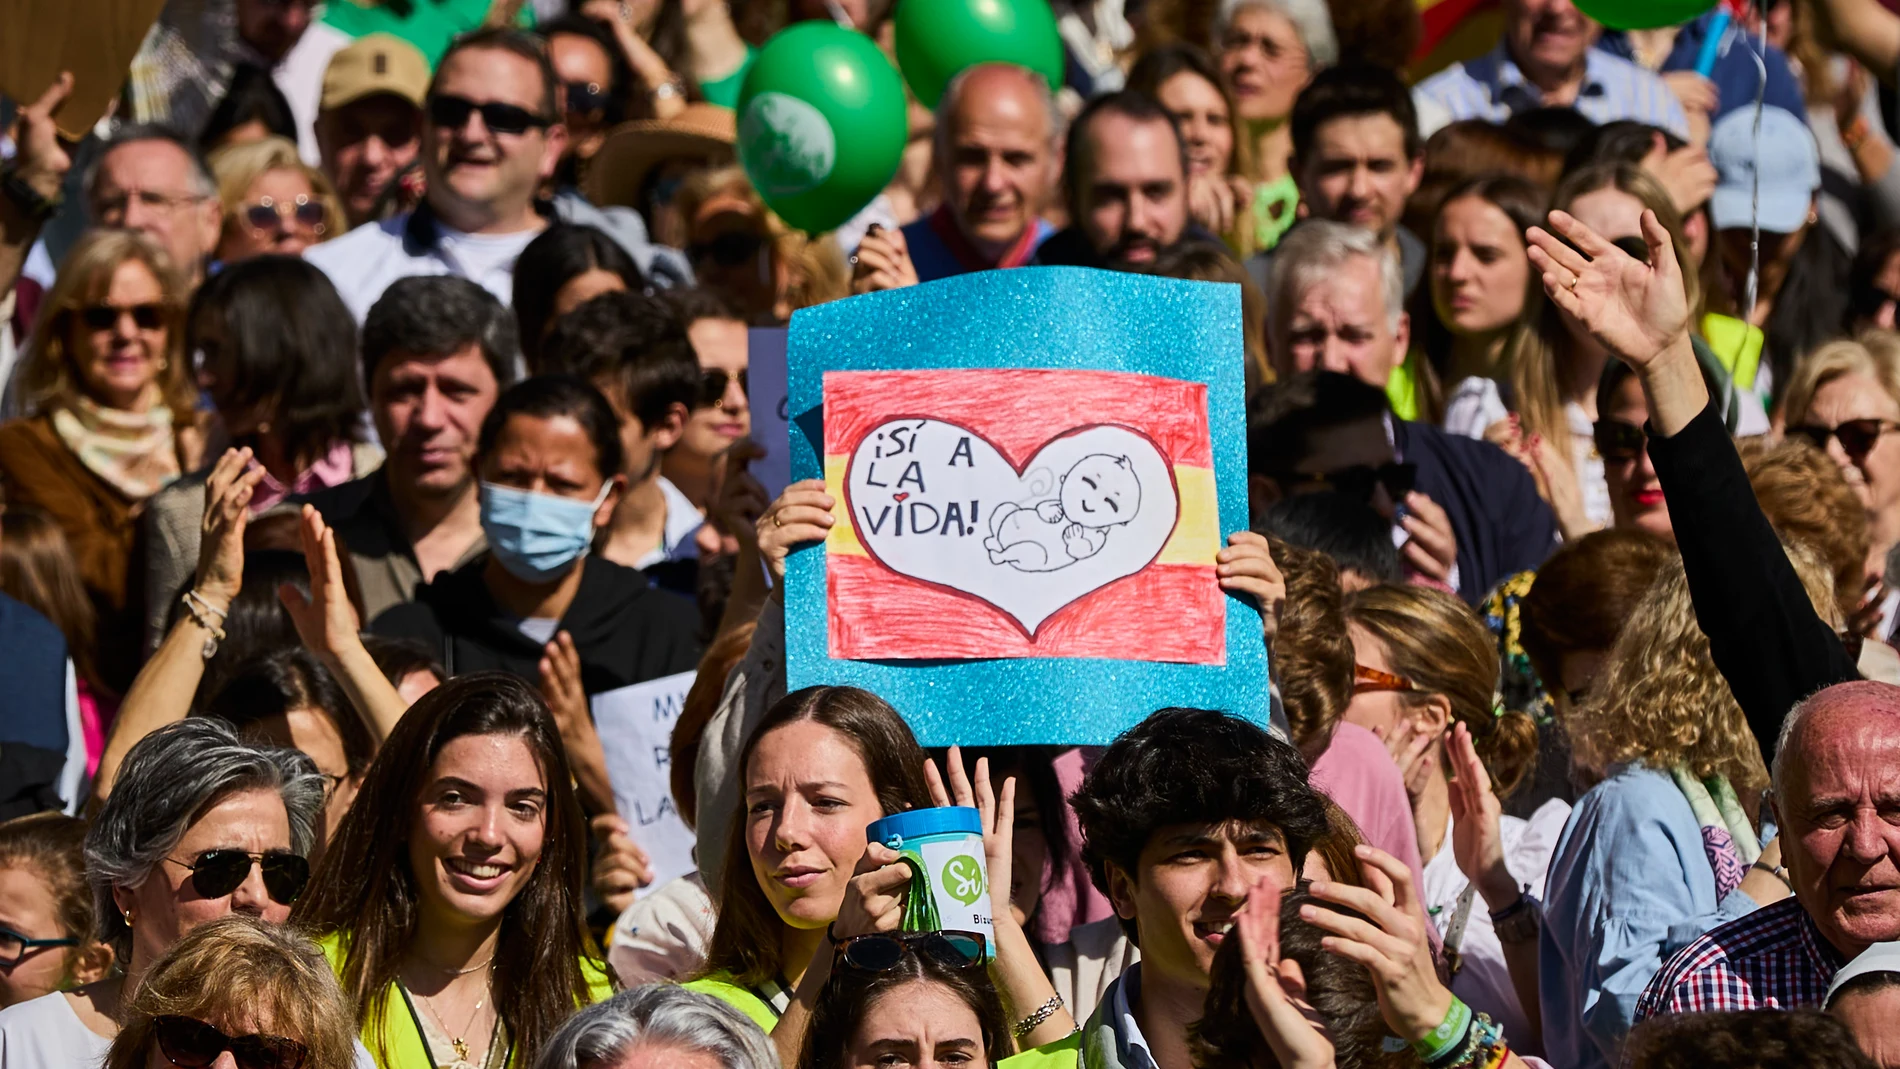  Marcha convocada por la Plataforma Sí a la Vida, integrada por más de 500 asociaciones provida, en Madrid, con motivo del Día Internacional de la Vida.